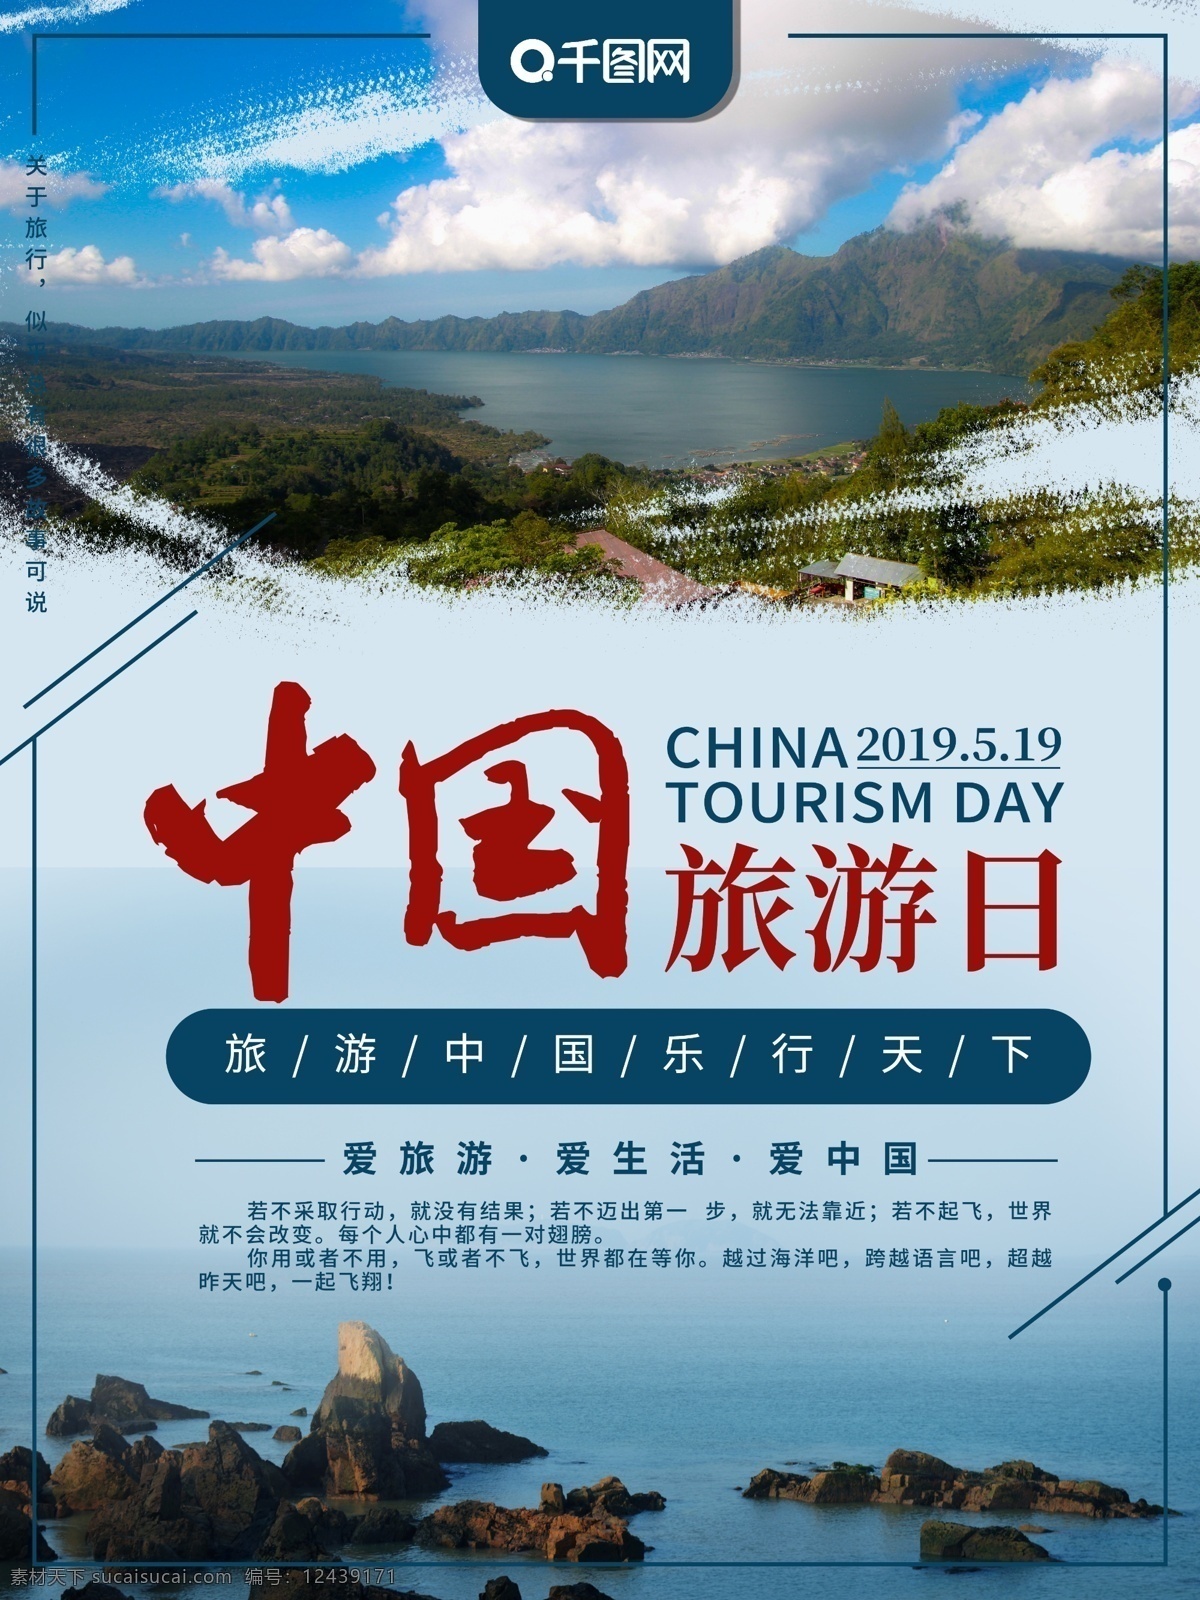 中国旅游 日 主题 海报 模板 风景 海岛 旅游 中国旅游日 中国 旅行